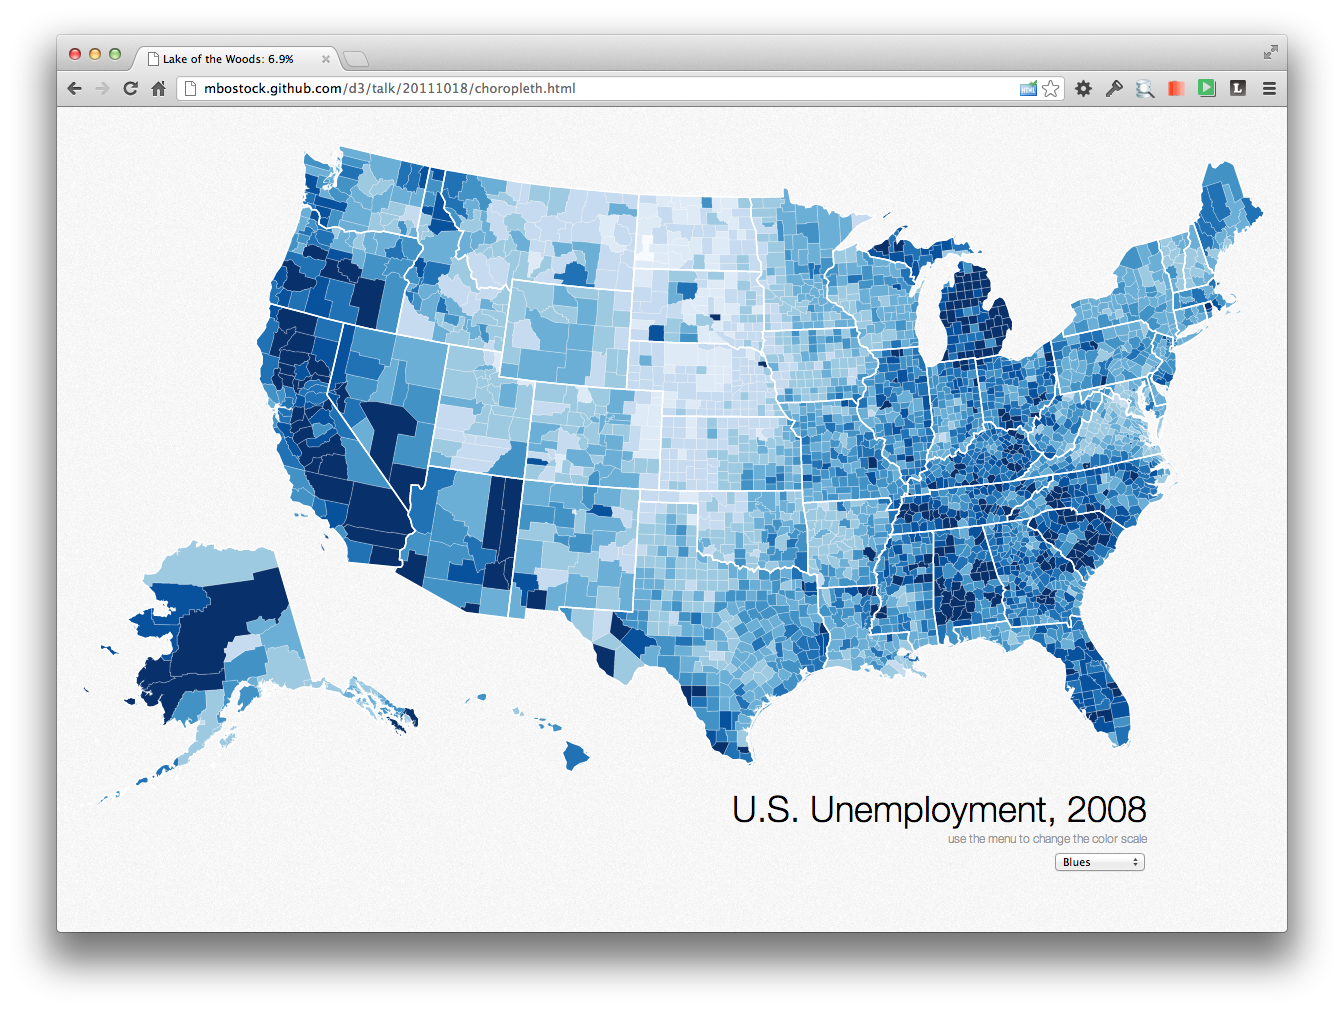 Unemployment
USA